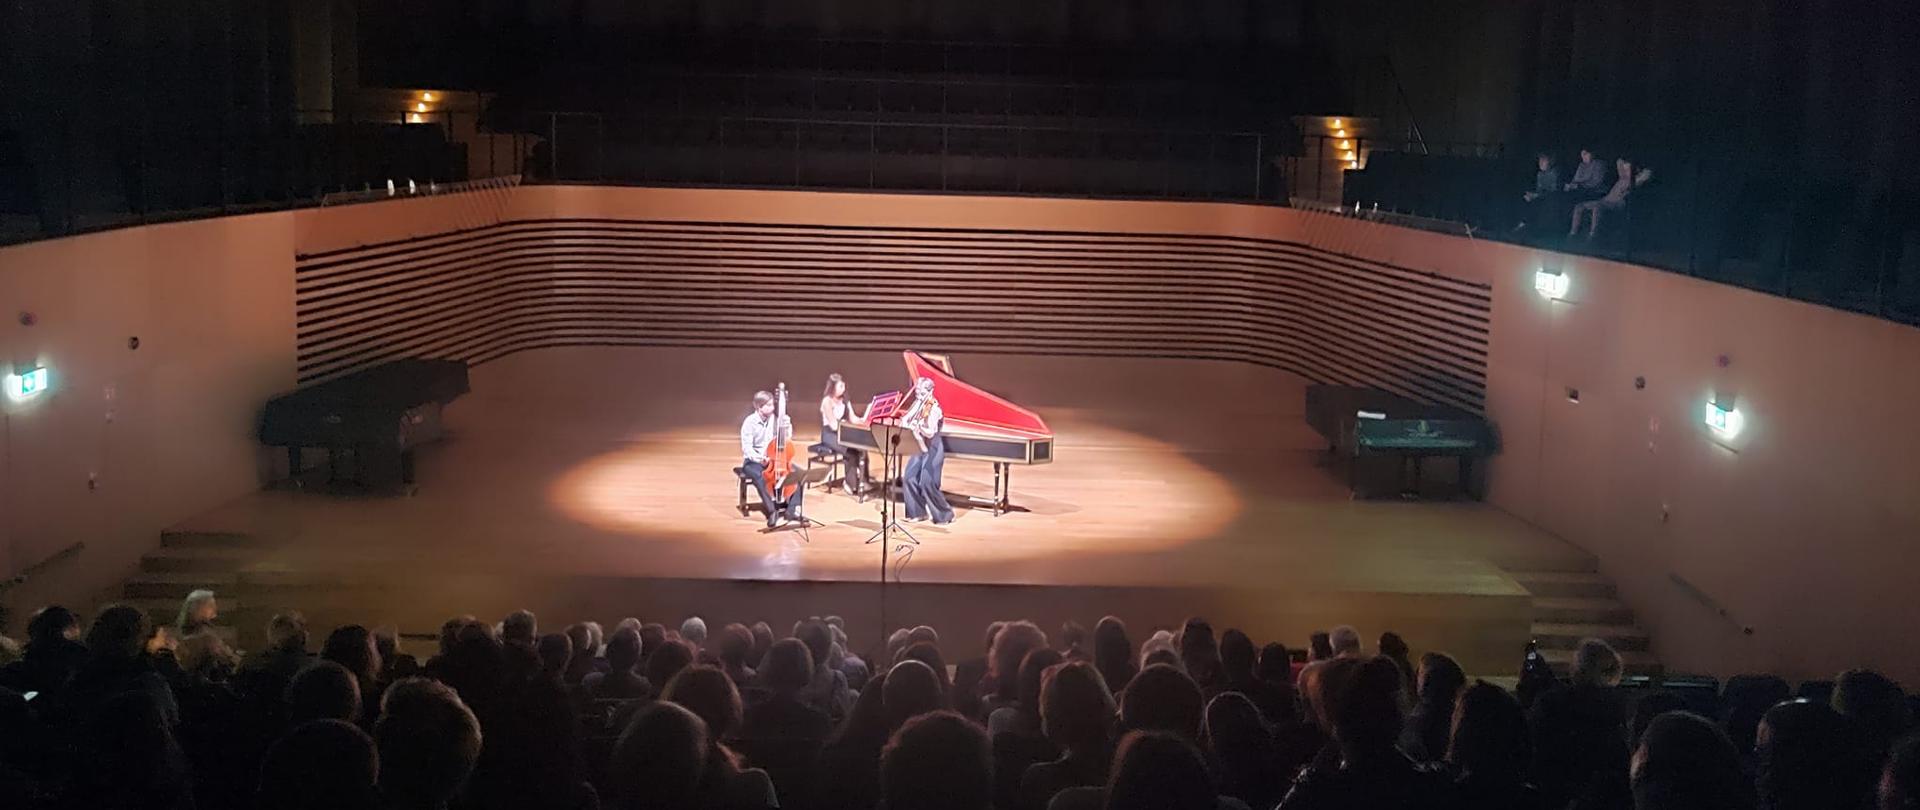 Dwie kobiety grają na skrzypcach i klawesynie, obok po lewej stronie mężczyzna siedzi i gra na violi da gamba na środku estrady sali koncertowej PSM , z przodu widać od tyłu zapełnioną publicznością widownię.